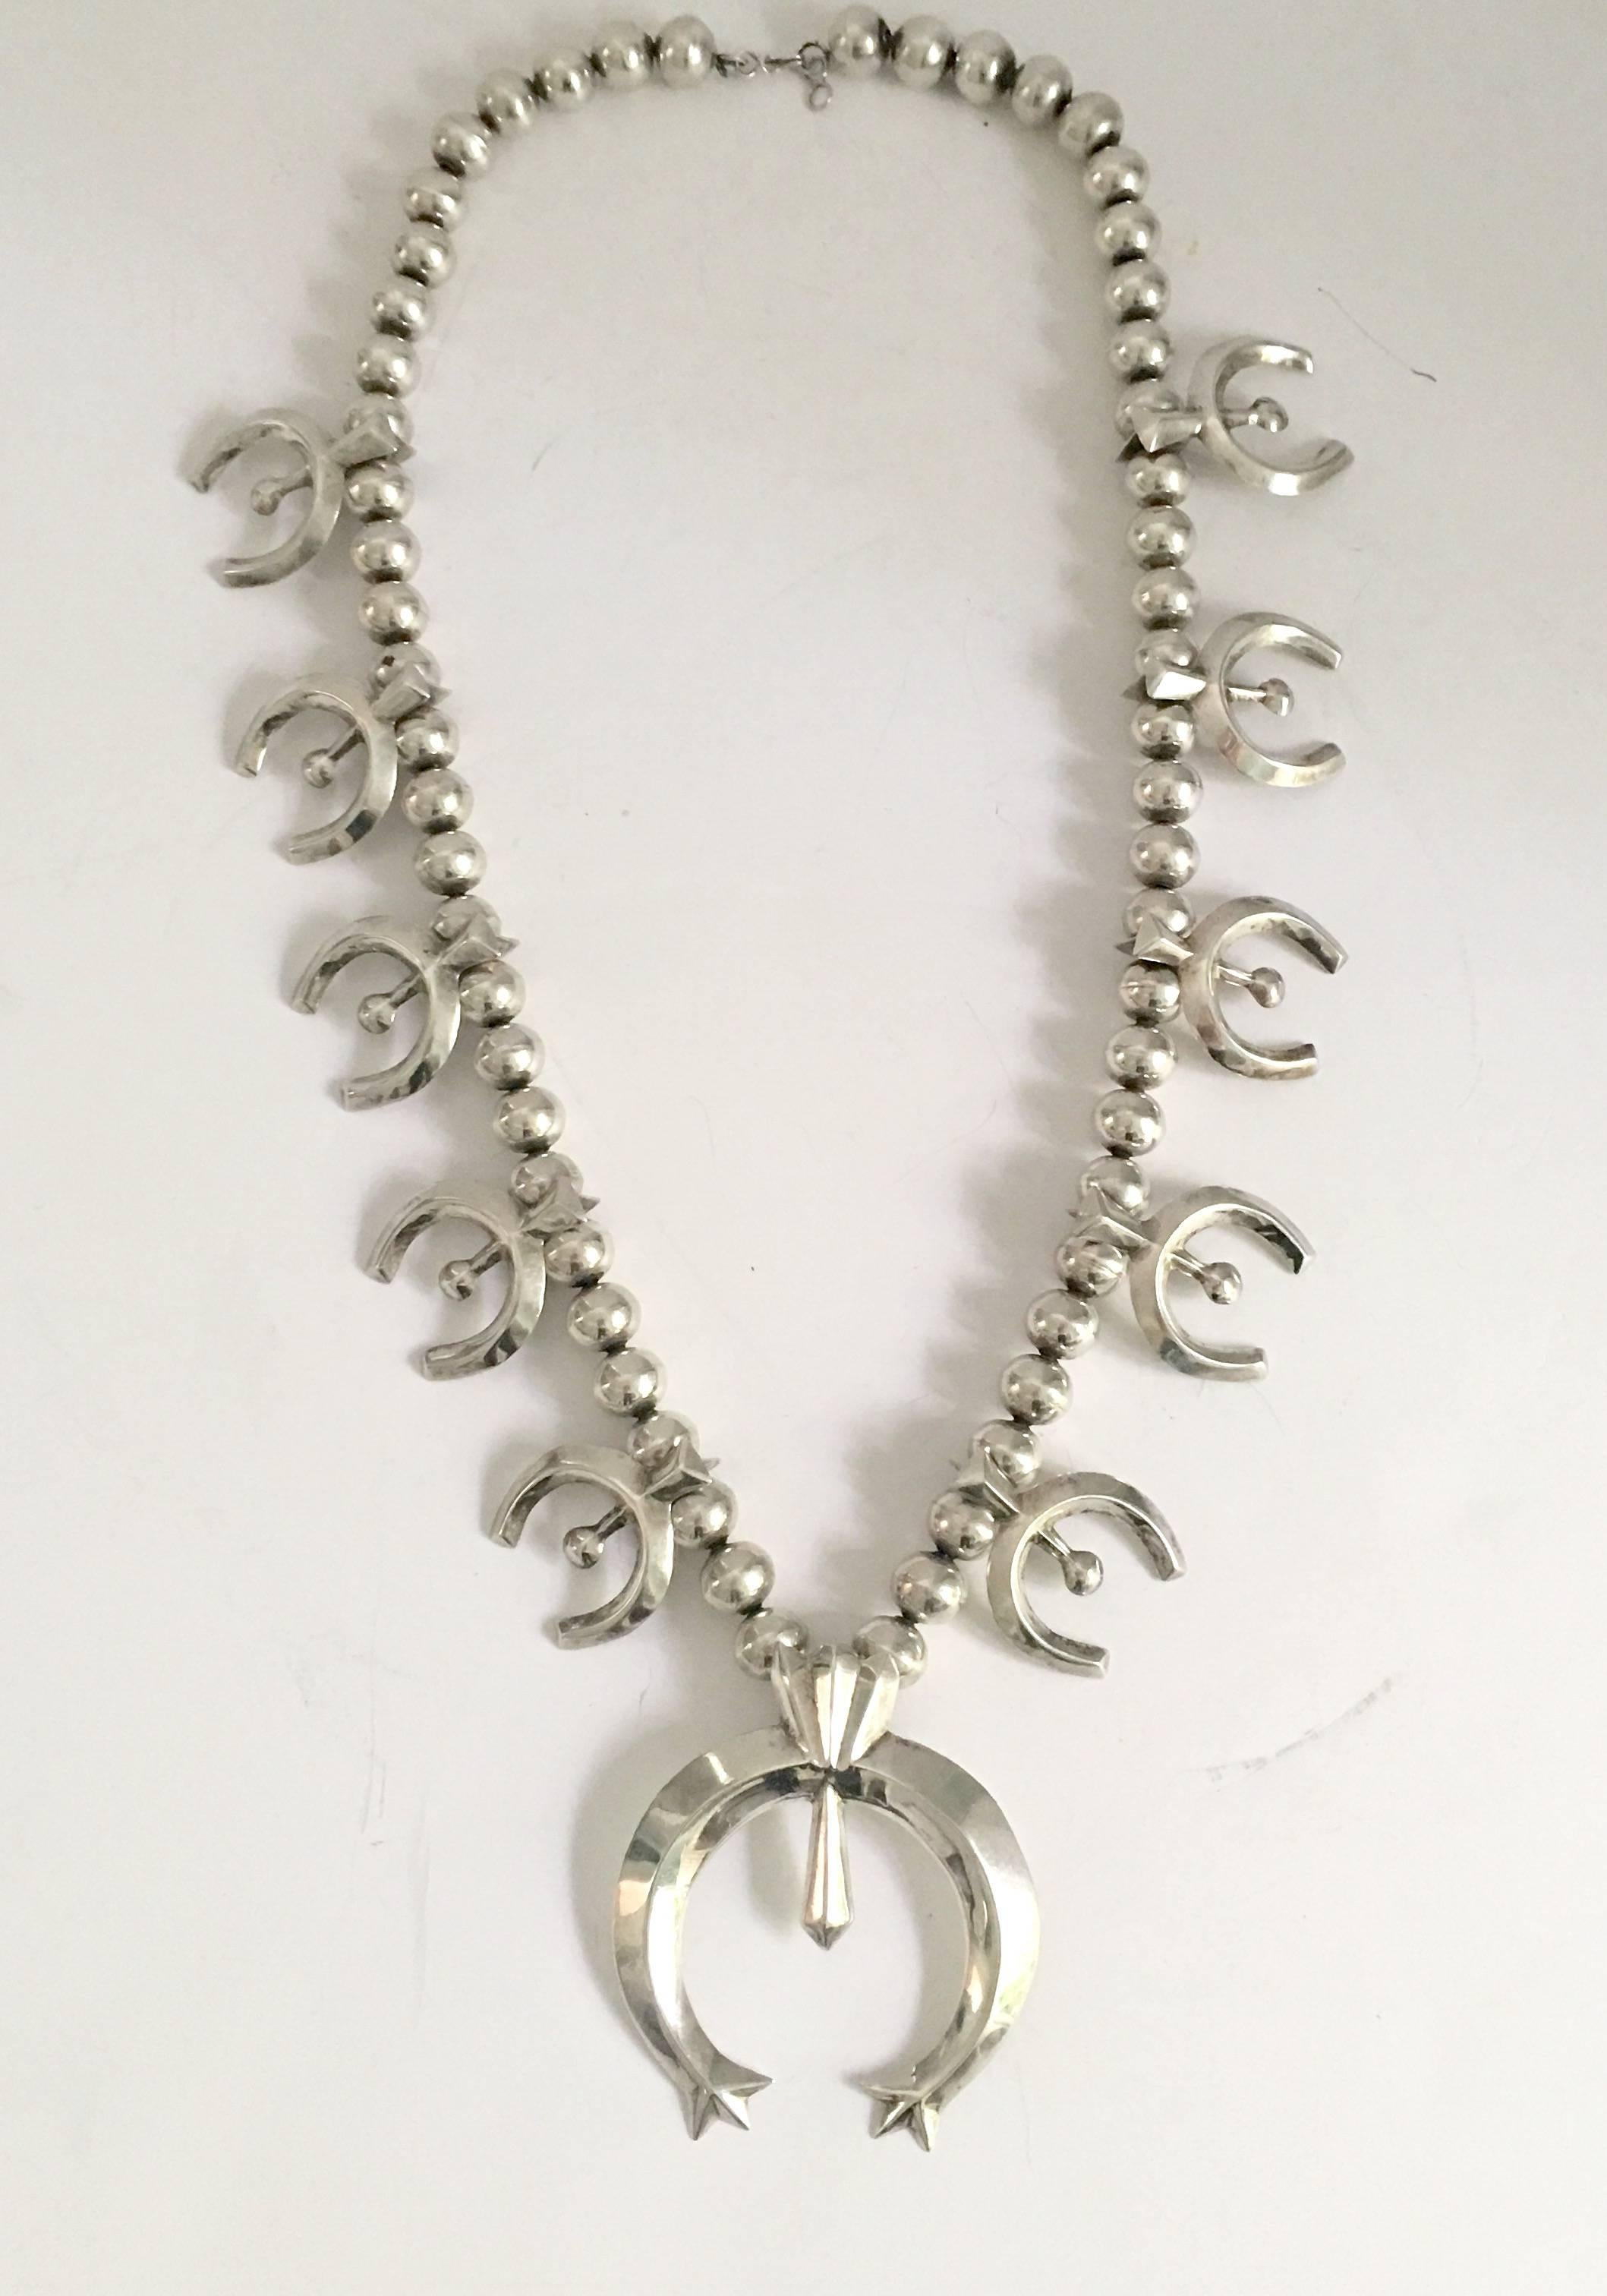 1940s squash blossom necklace